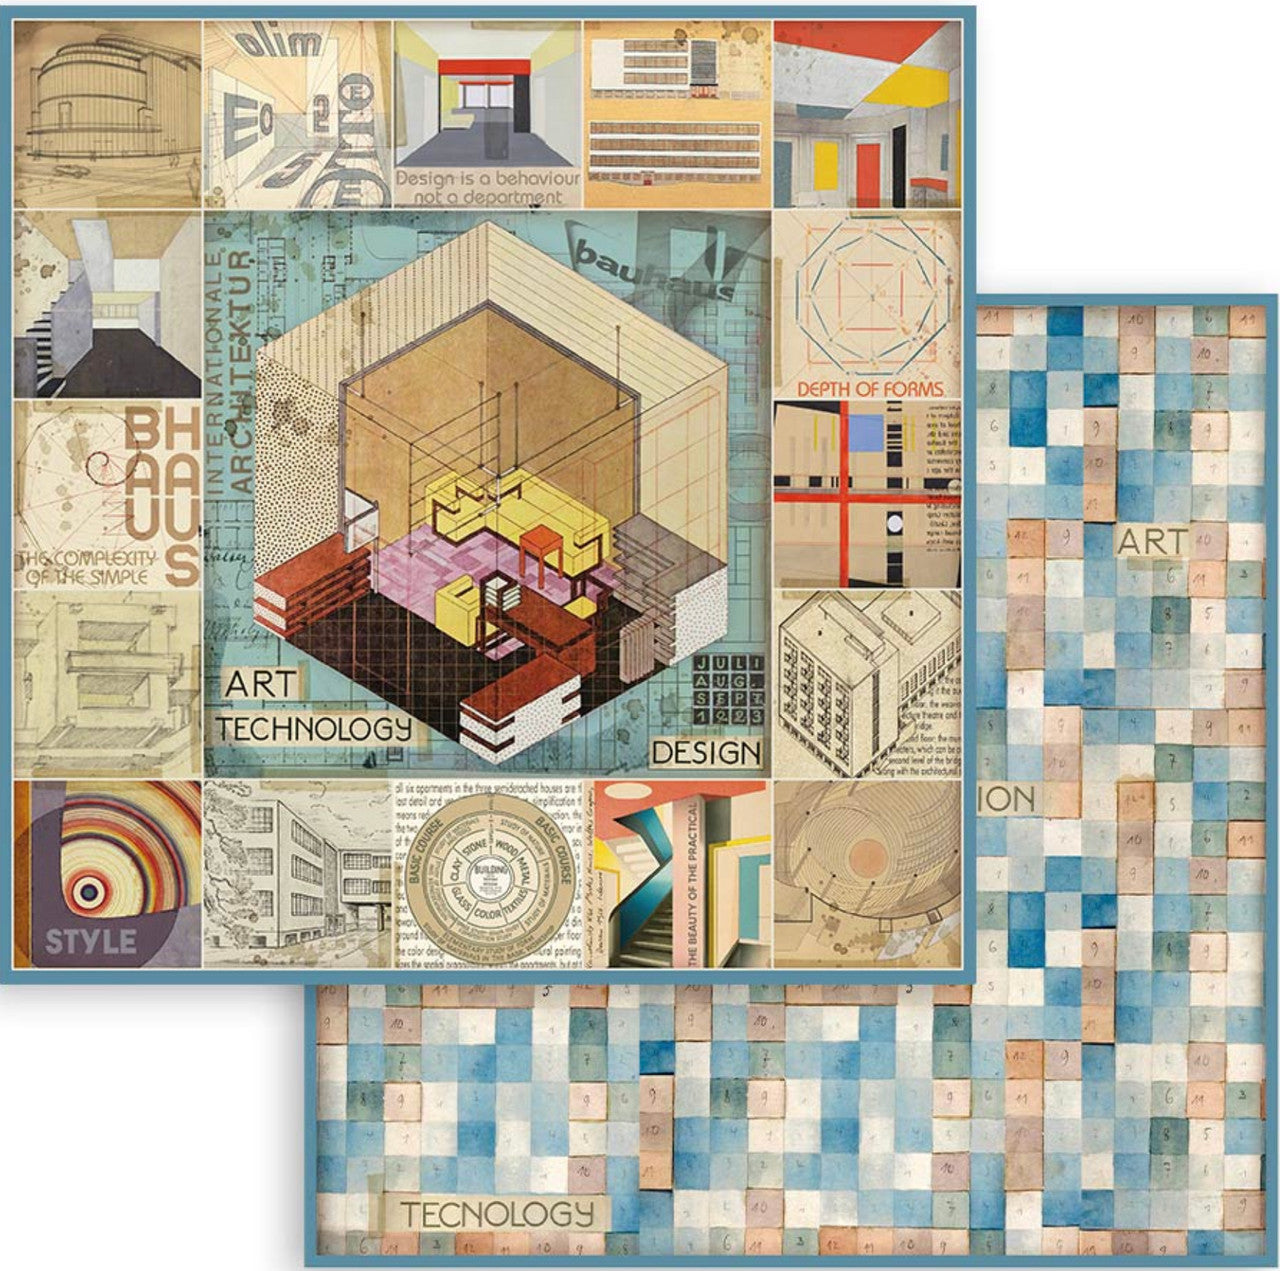 Stamperia Bauhaus 12 "x 12" papiercollectie